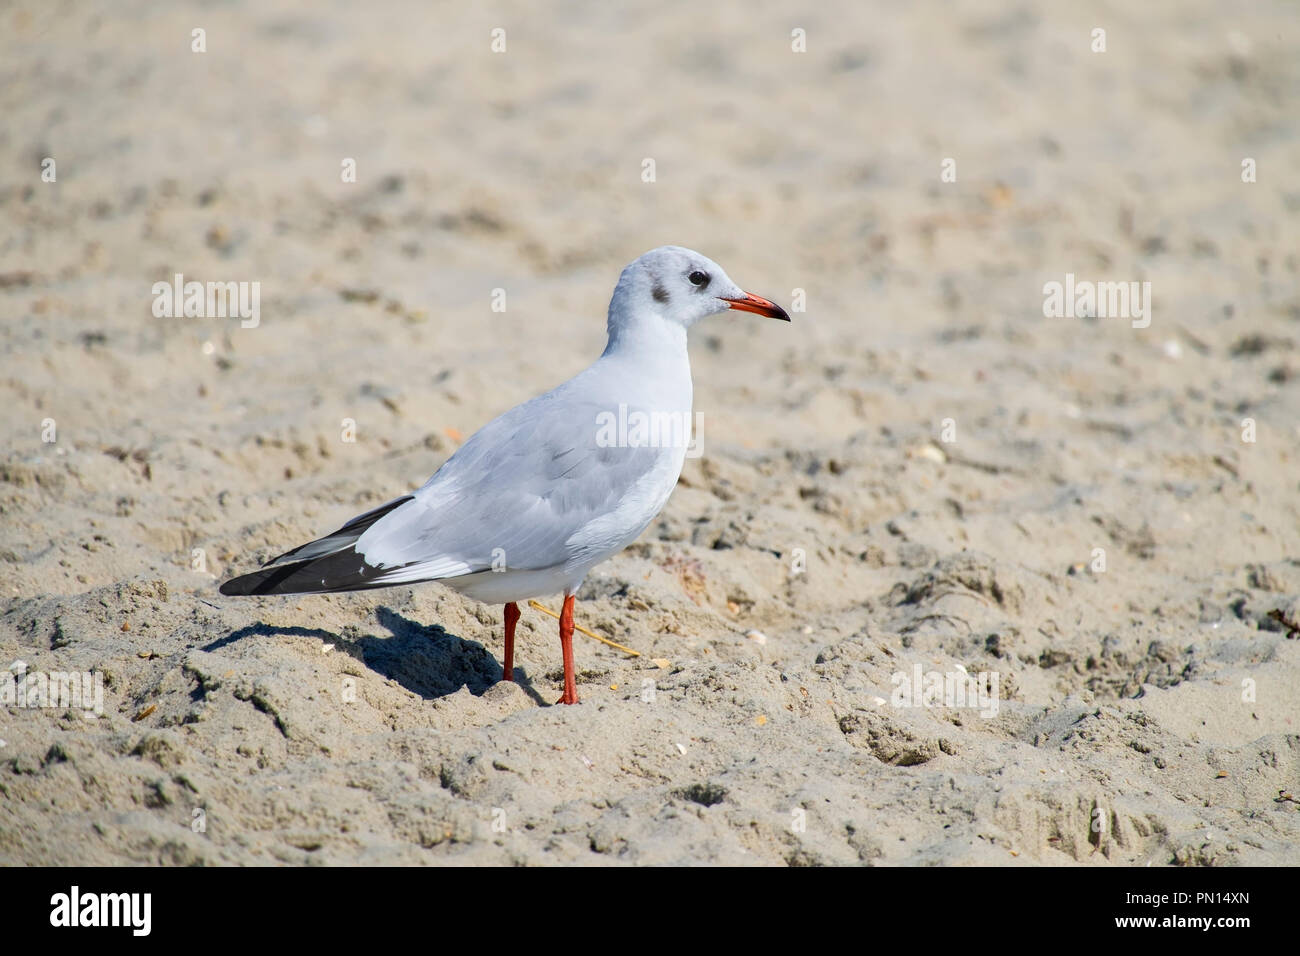 Slender-billed gull stands on the beach sand (Chroicocephalus genei) Stock Photo